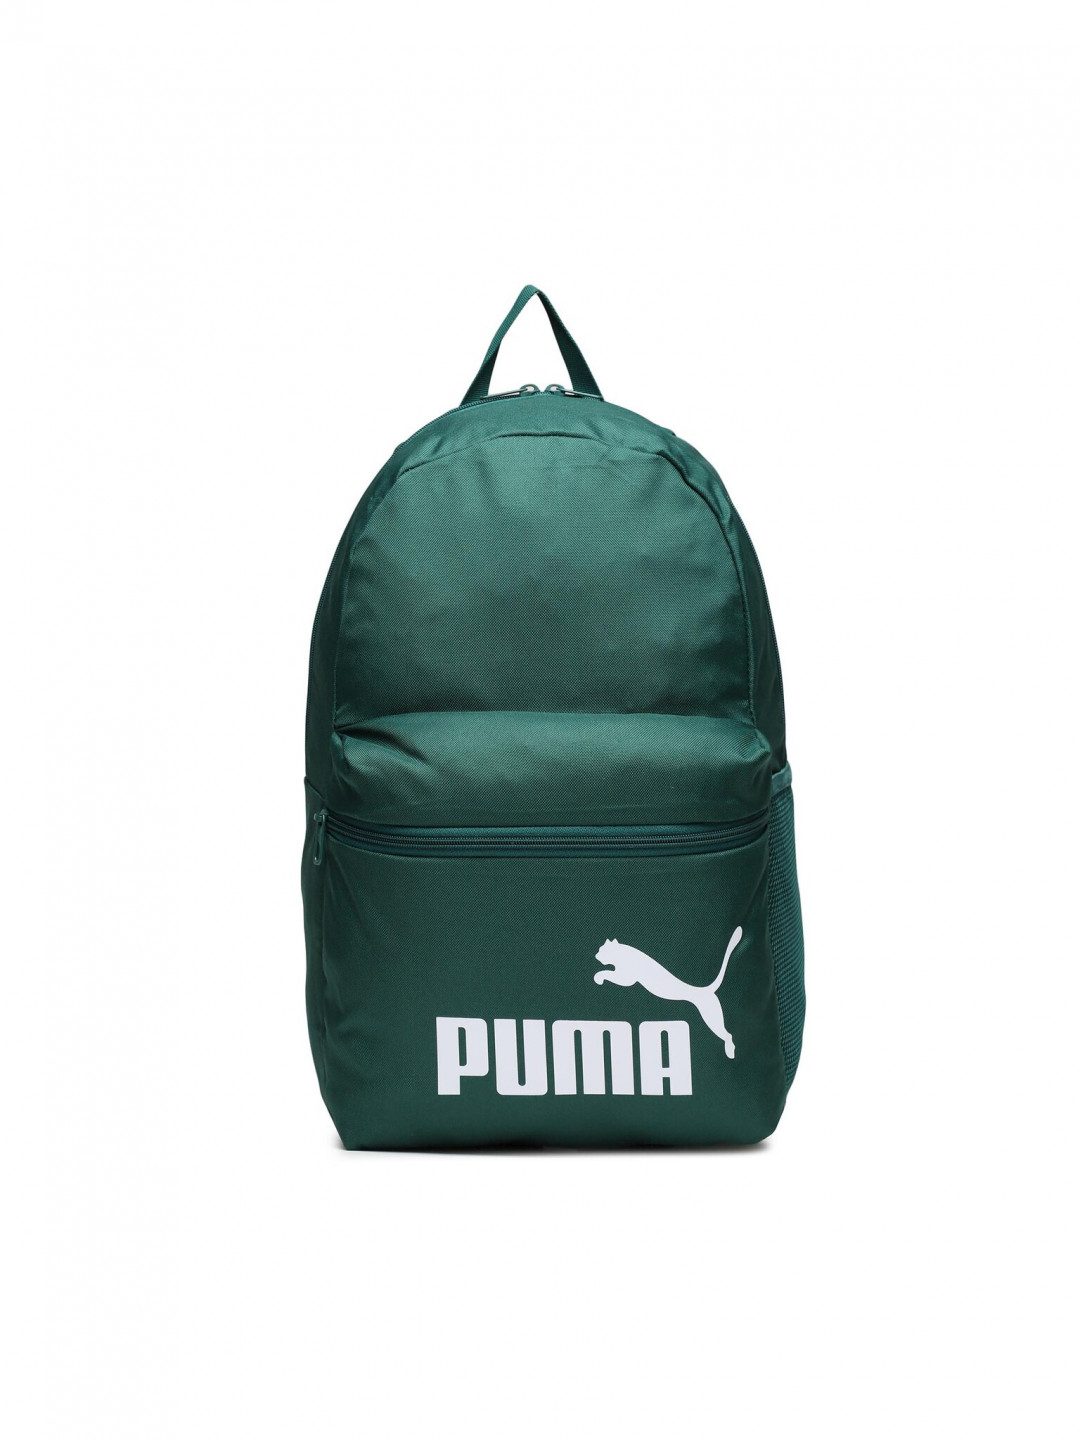 Puma Batoh Phase Backpack Malachite 079943 09 Zelená